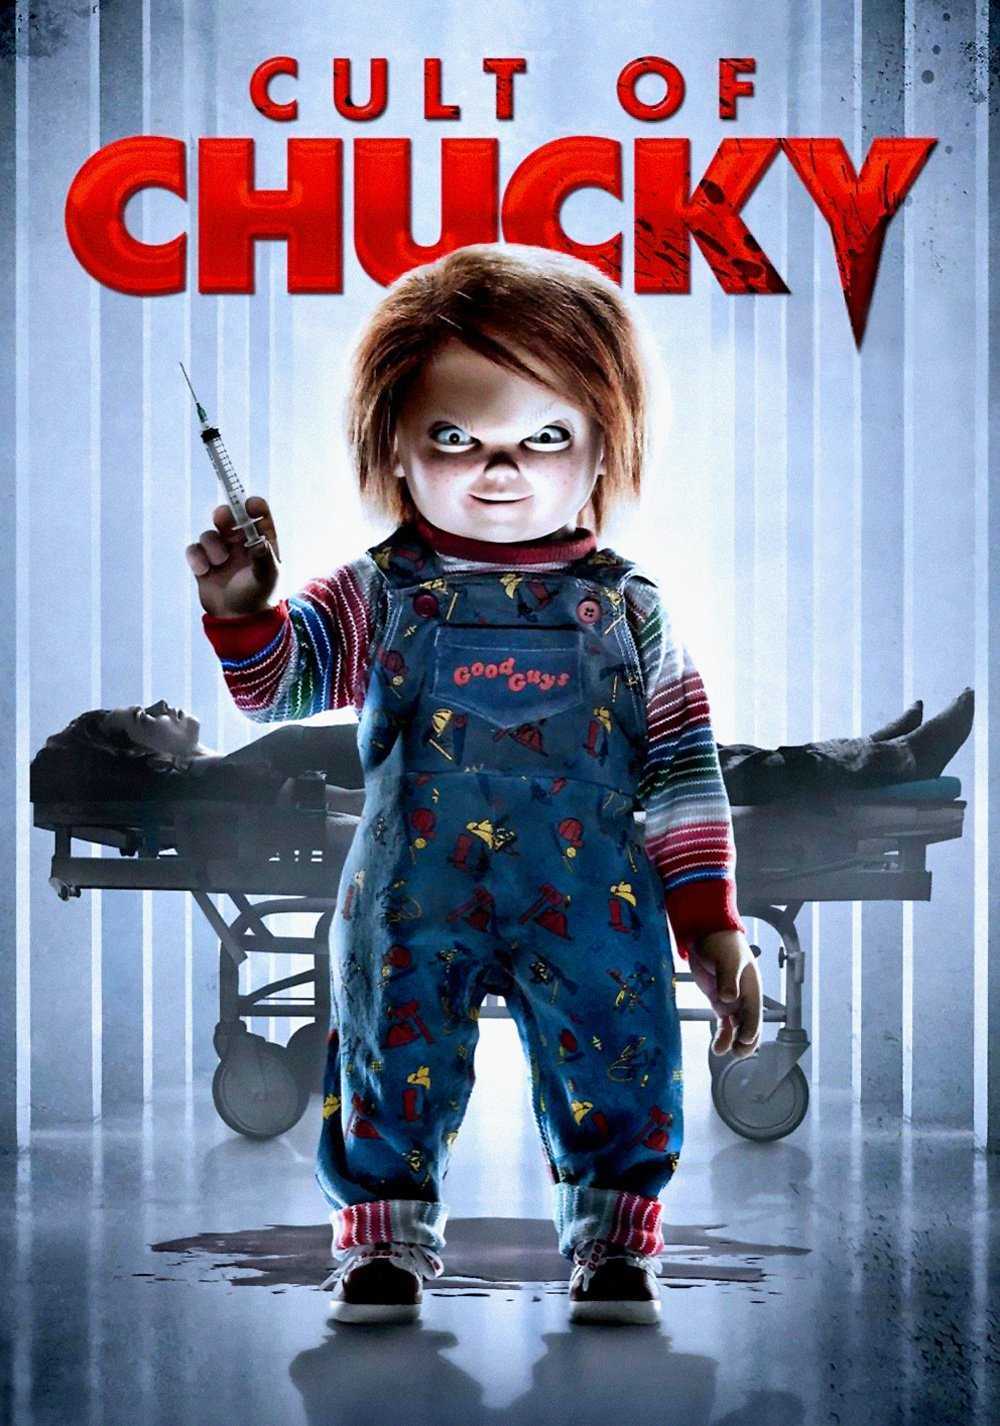 Çocuk Oyunu 7: Chucky Geri Dönüyor